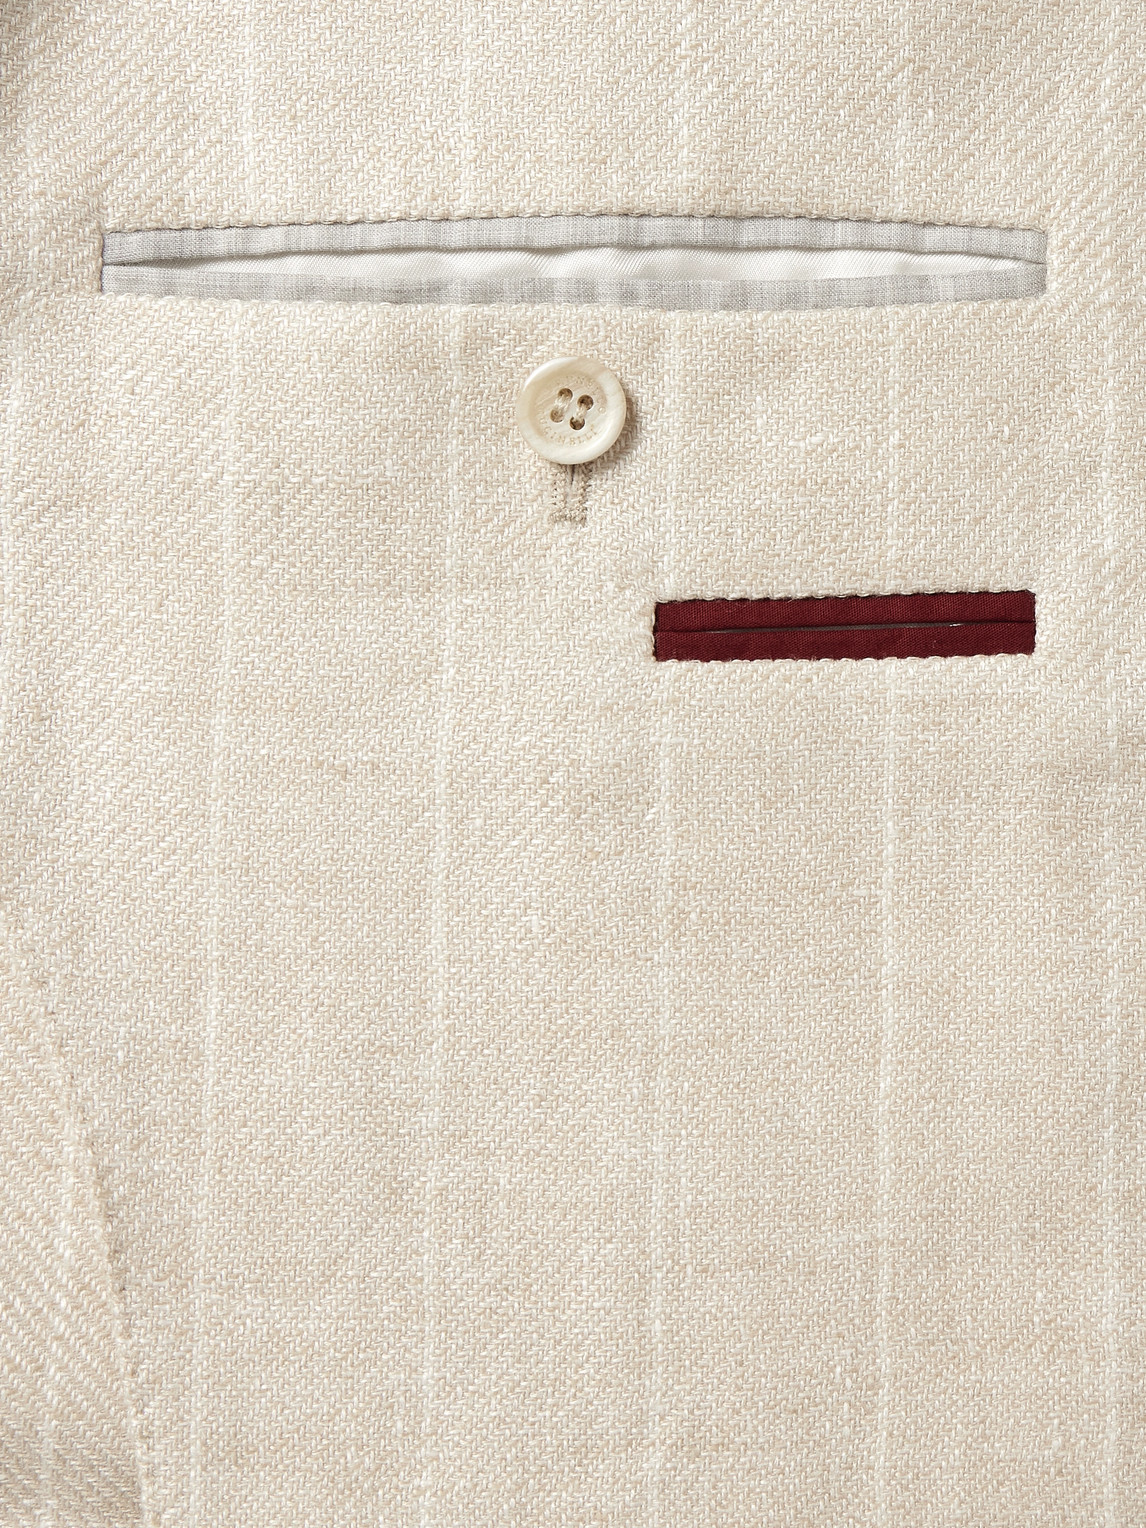 Shop Brunello Cucinelli Unstructured Striped Linen, Wool And Silk-blend Blazer In Neutrals